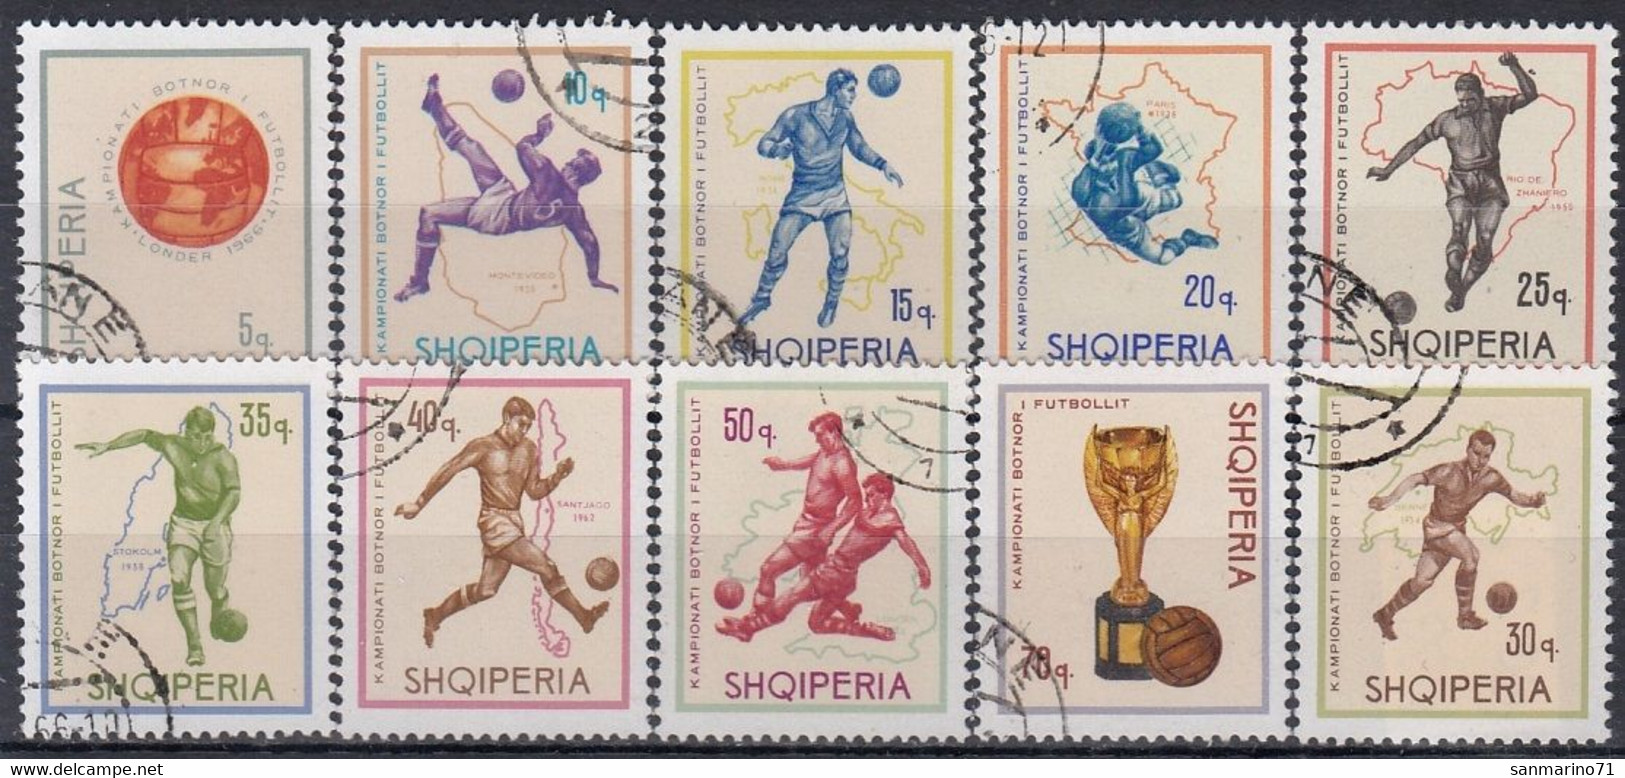 ALBANIA 1036-1045,used,football - 1966 – England